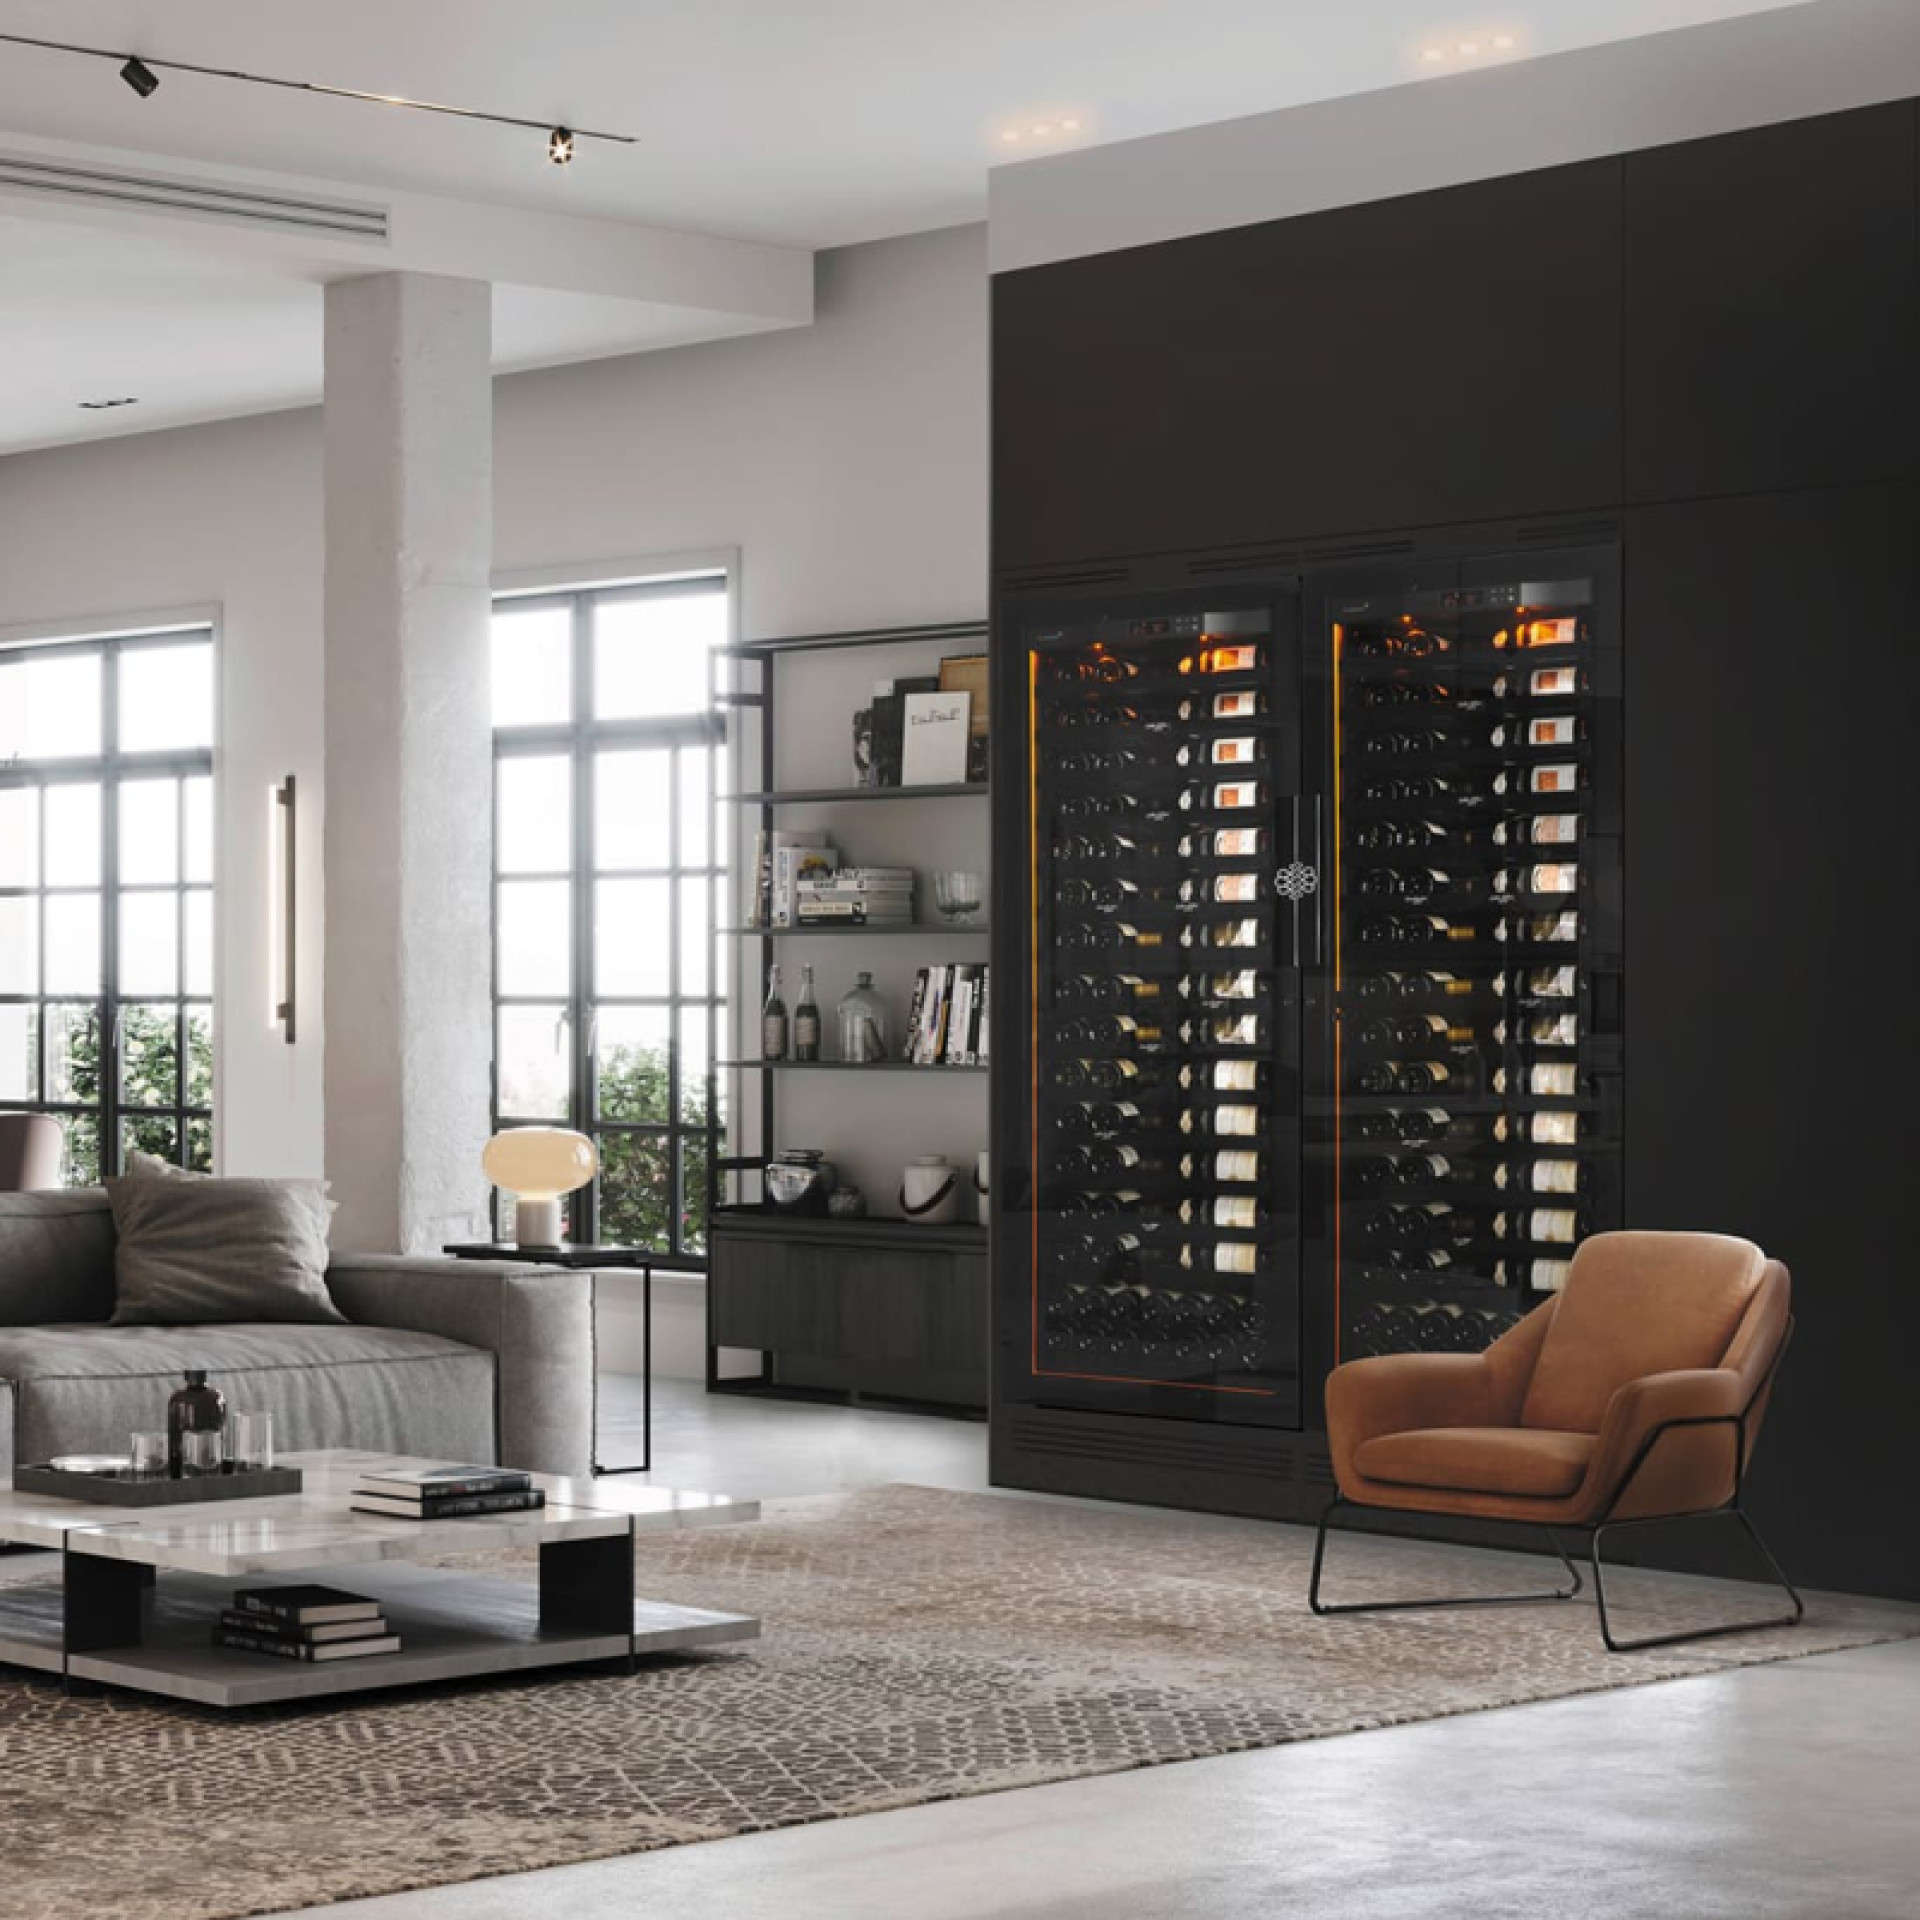 Deux grande caves à vin intégrées dans un meuble noir sur-mesure dans un salon contemporain avec façades de clayettes noires et éclairage d'ambiance intégré. - Revelation EuroCave